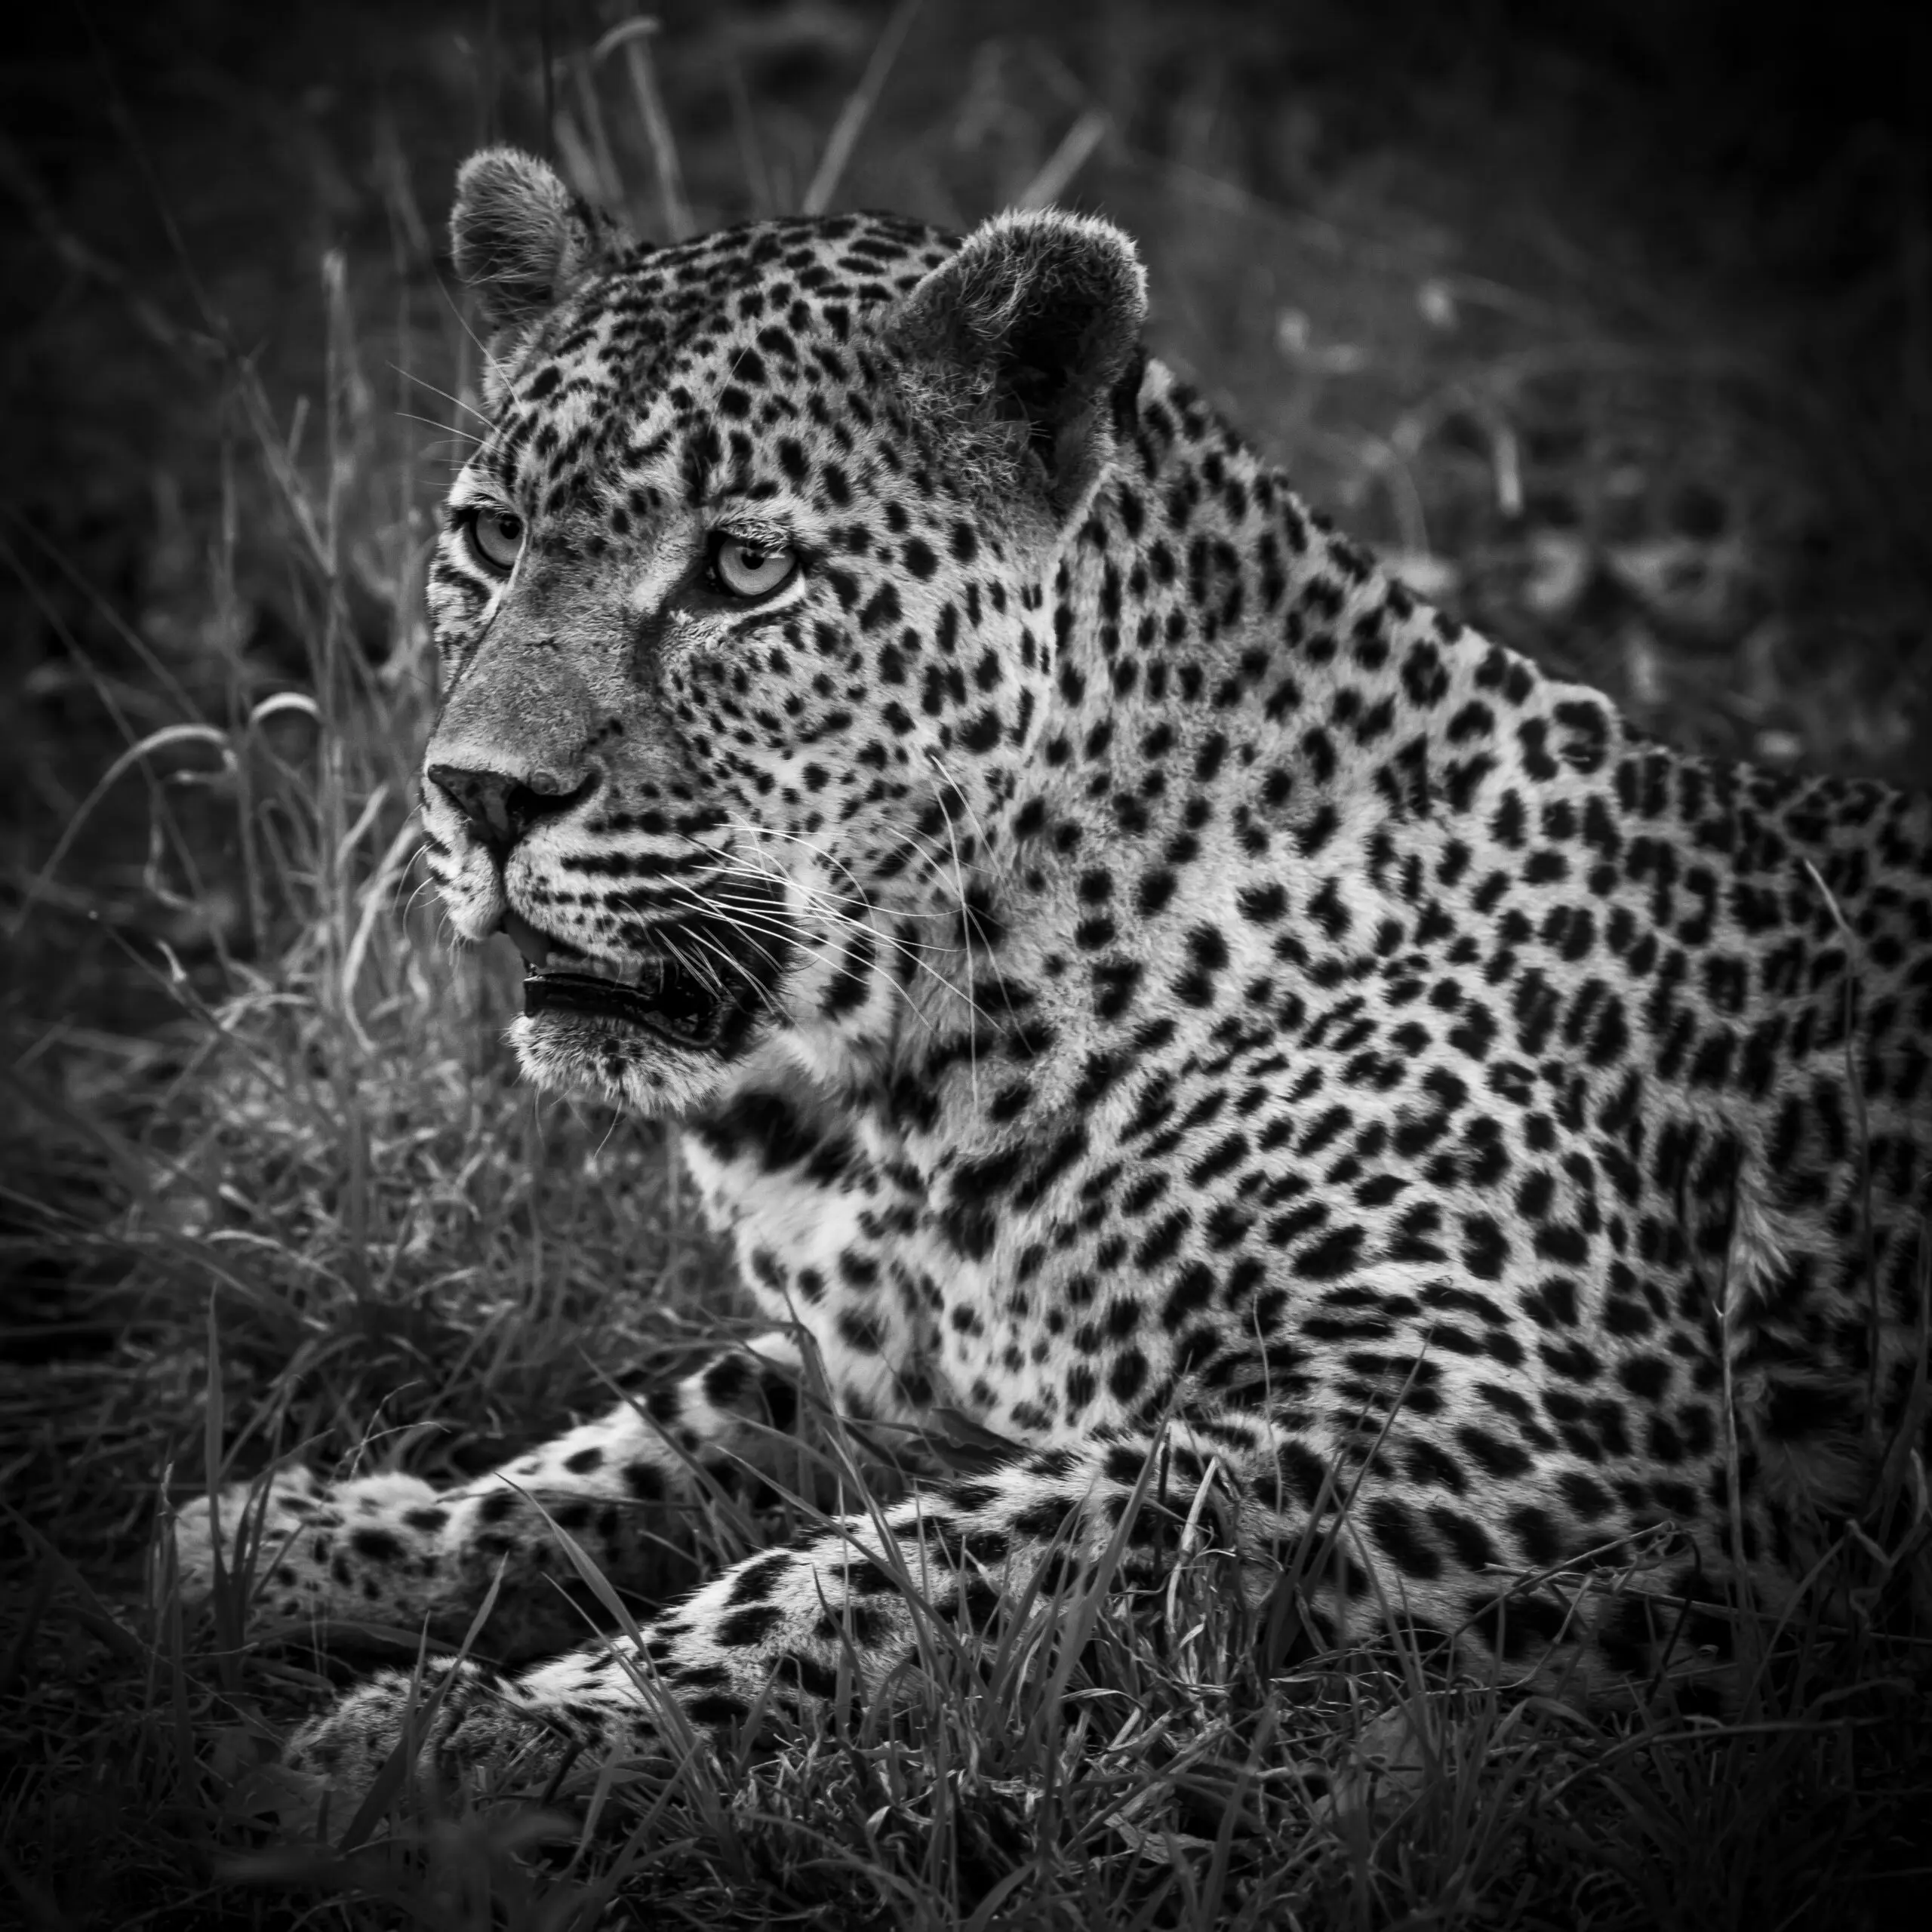 Wandbild (3694) In the black wilderness 4 präsentiert: Tiere,Wildtiere,Aus Afrika